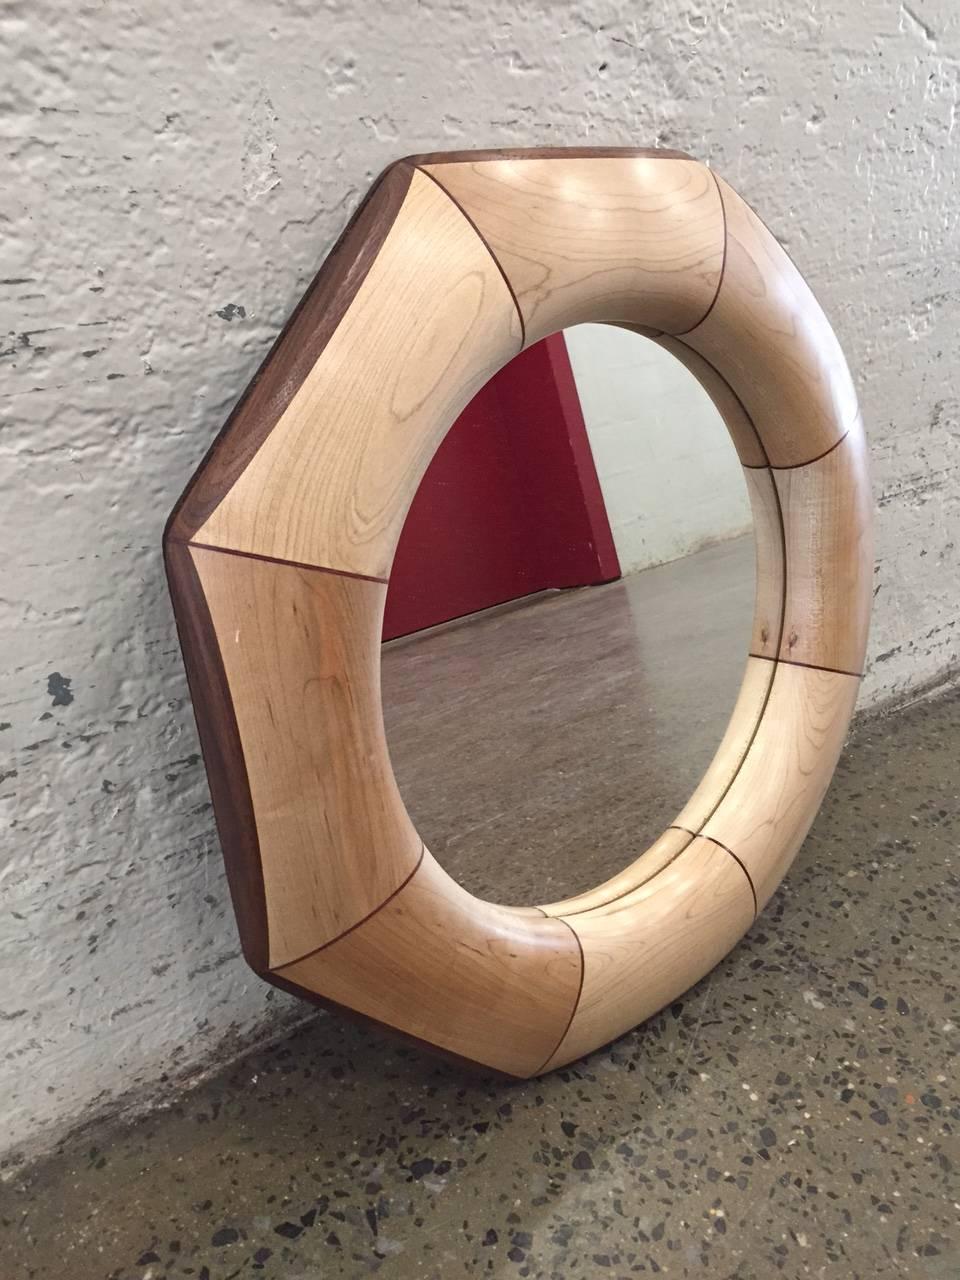 Miroir octogonal personnalisé avec incrustation d'érable et de bois de rose.
Le miroir répertorié est actuellement disponible.